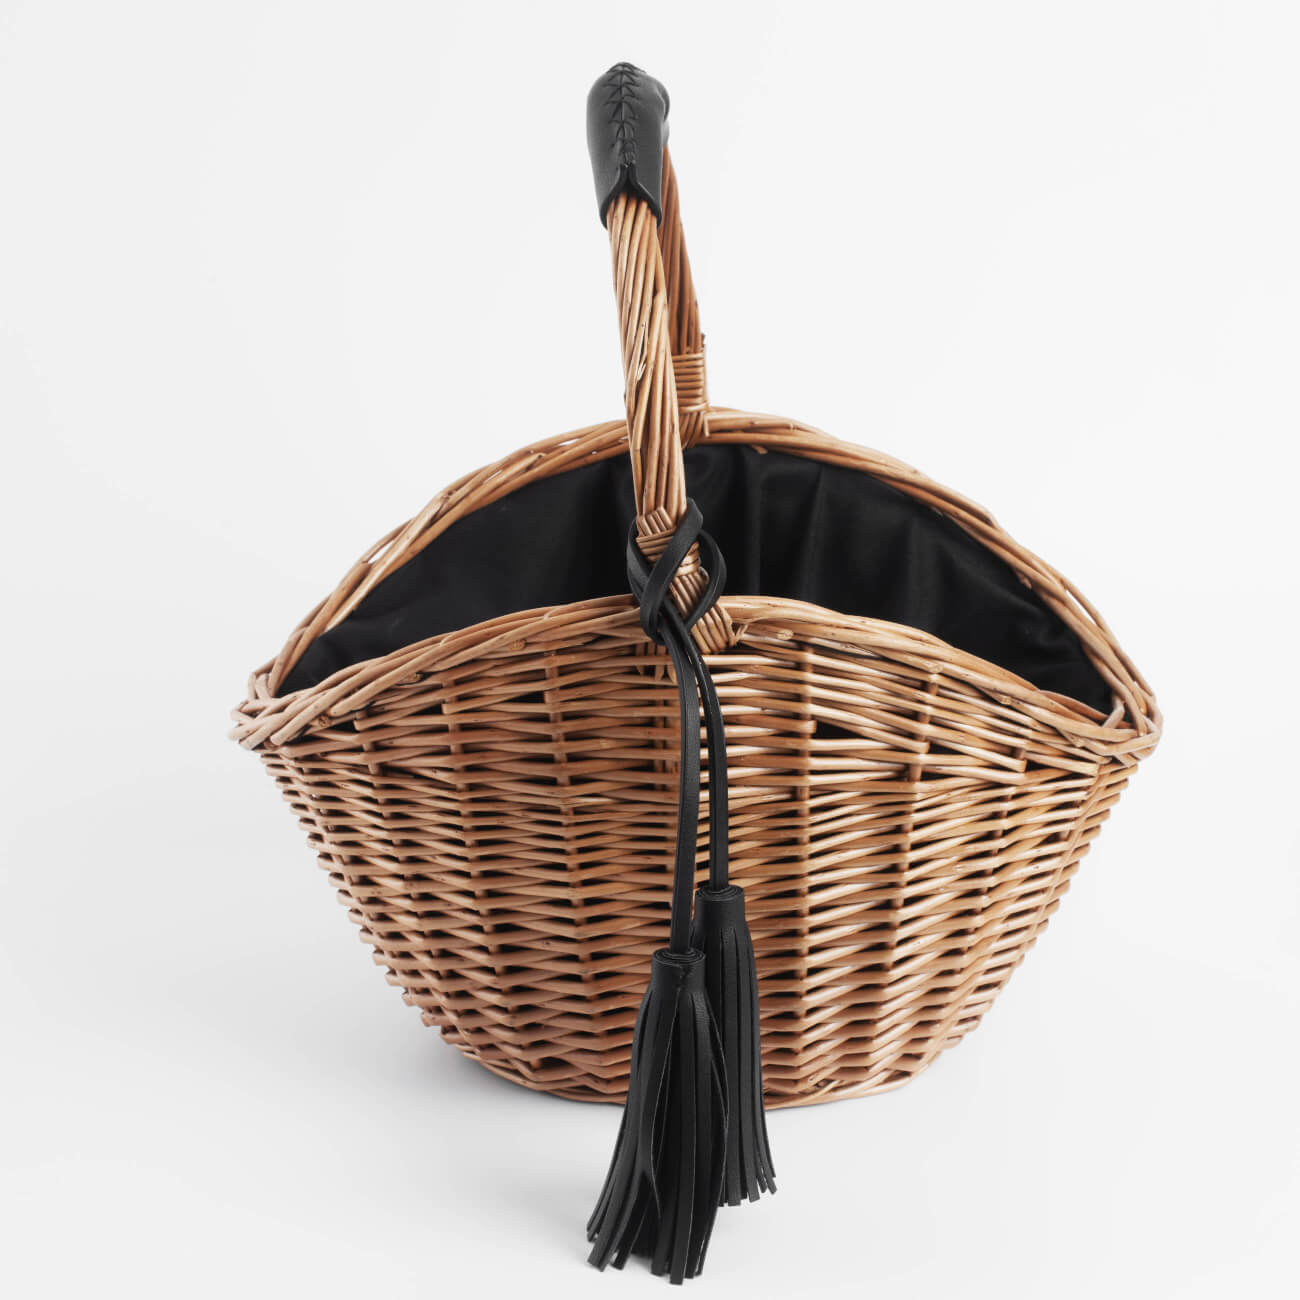 Корзина-сумка, 32 см, ива/полиэстер, бежево-черная, Black style корзина для вещей joyarty